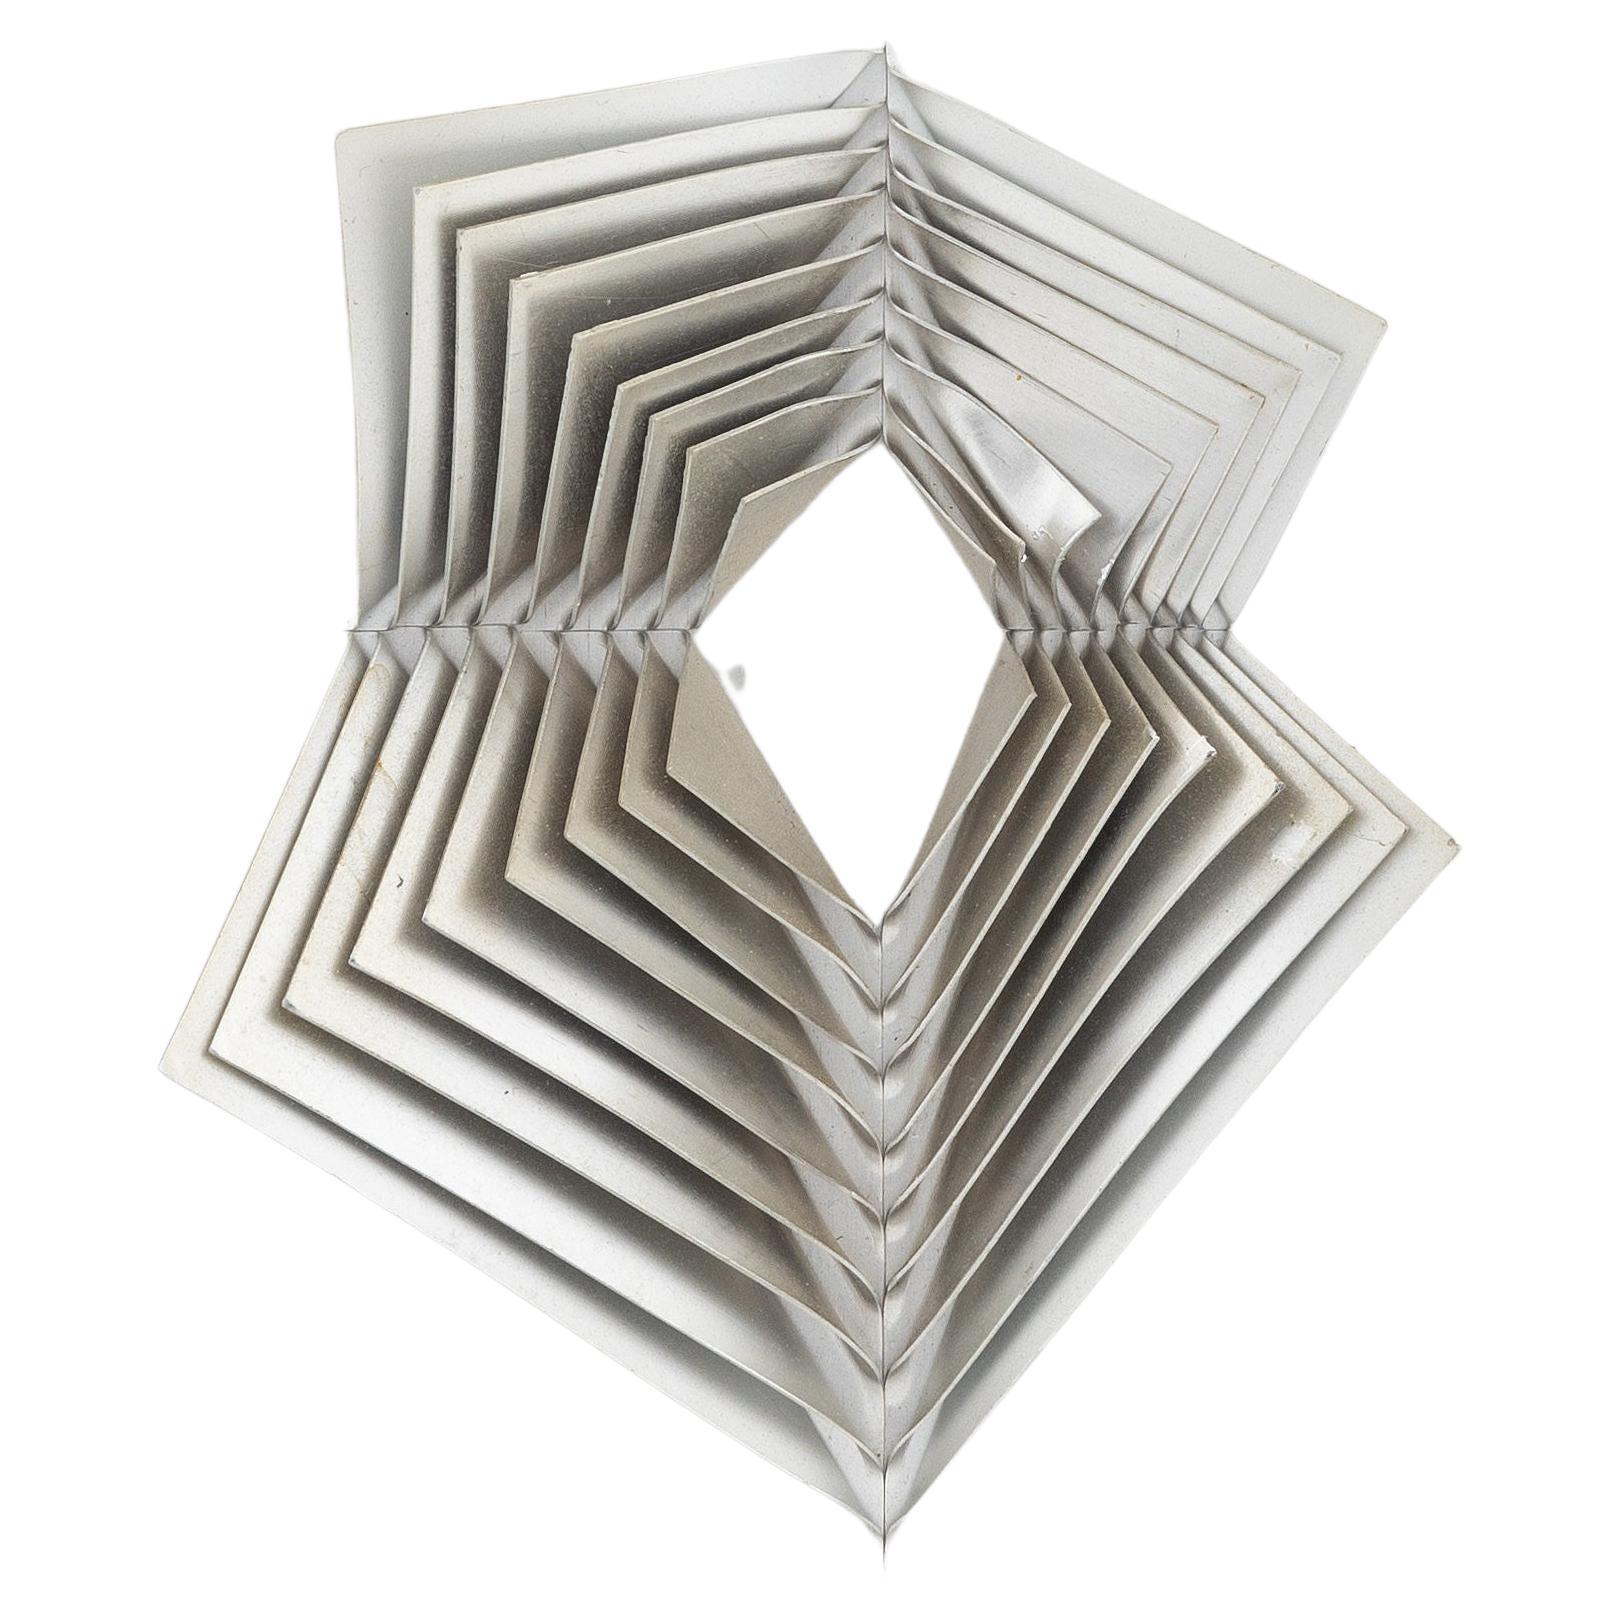 Wandskulptur aus Aluminium des schwedischen Künstlers Arne Jones aus den 1970er Jahren. Besteht aus 9 übereinander gestapelten Aluminiumplatten, die durch vier Nieten miteinander verbunden sind. Dieses Multiple soll in einer Auflage von etwa 4000